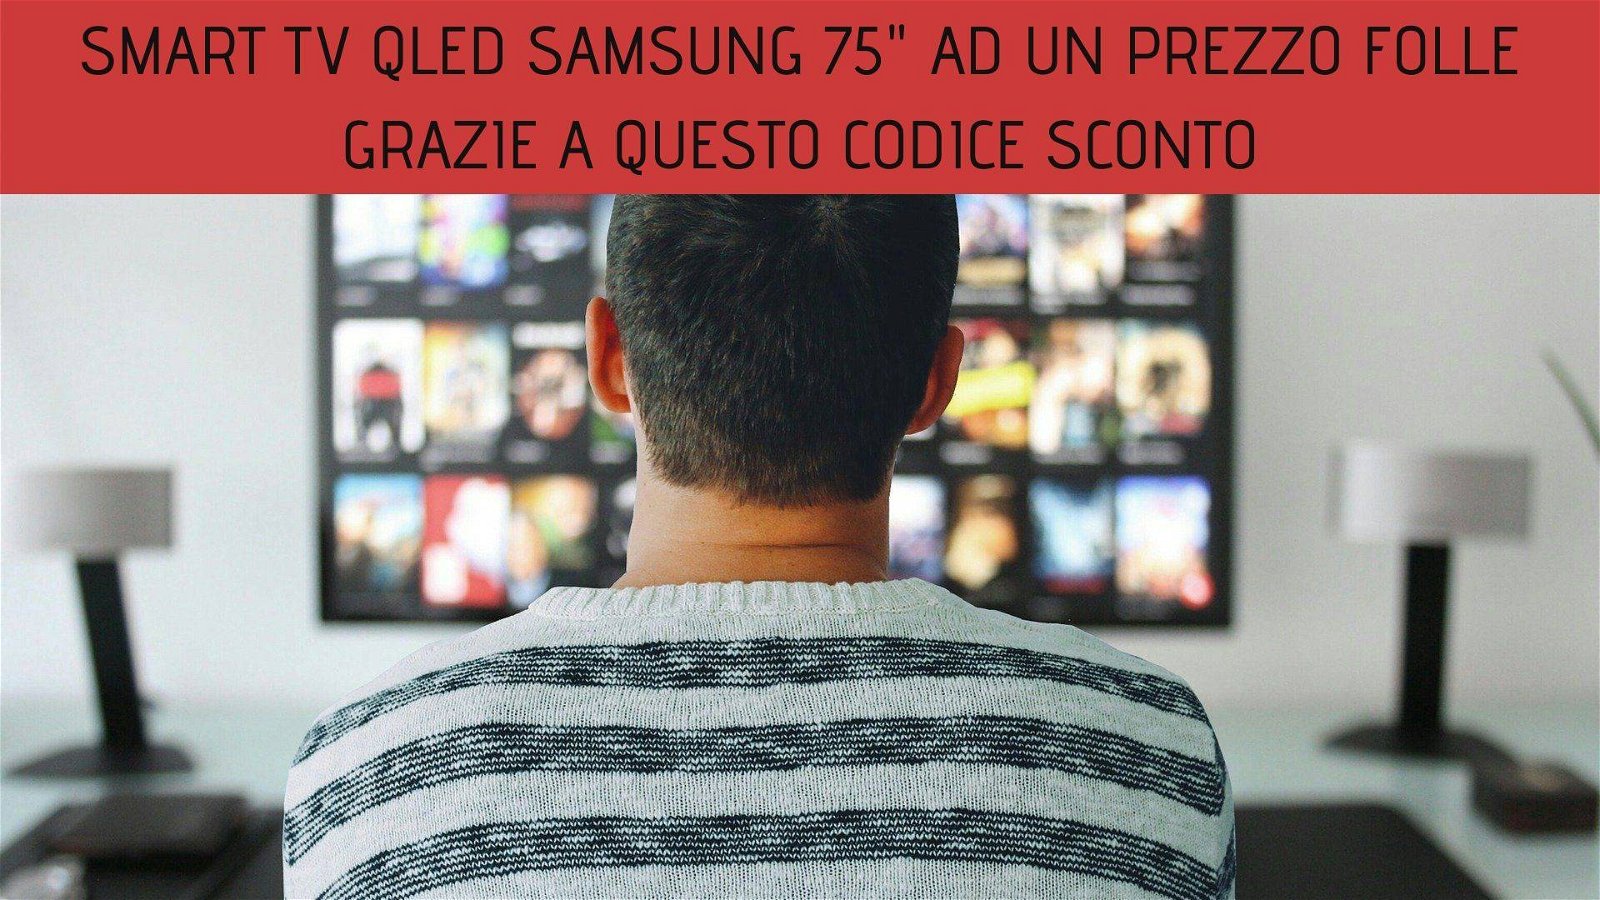 Immagine di Smart TV QLED Samsung da 75" ad un prezzo folle grazie a questo codice sconto